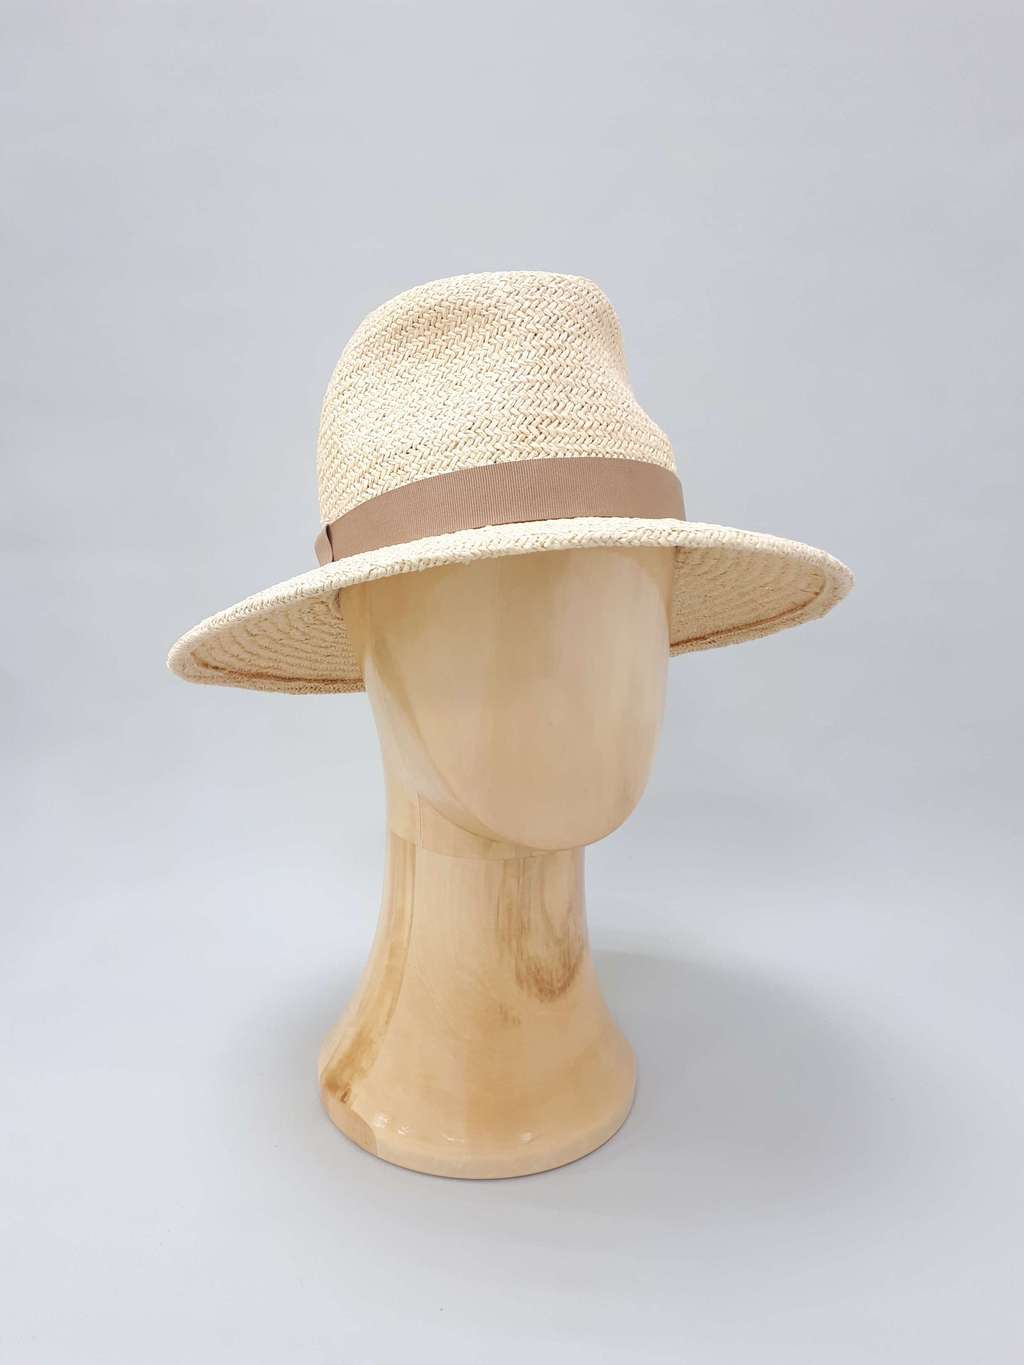 СОЛОМЕННЫЕ ШЛЯПЫ > Соломенная шляпа Fedora. Цвет натуральный соломенный  купить в интернет-магазине